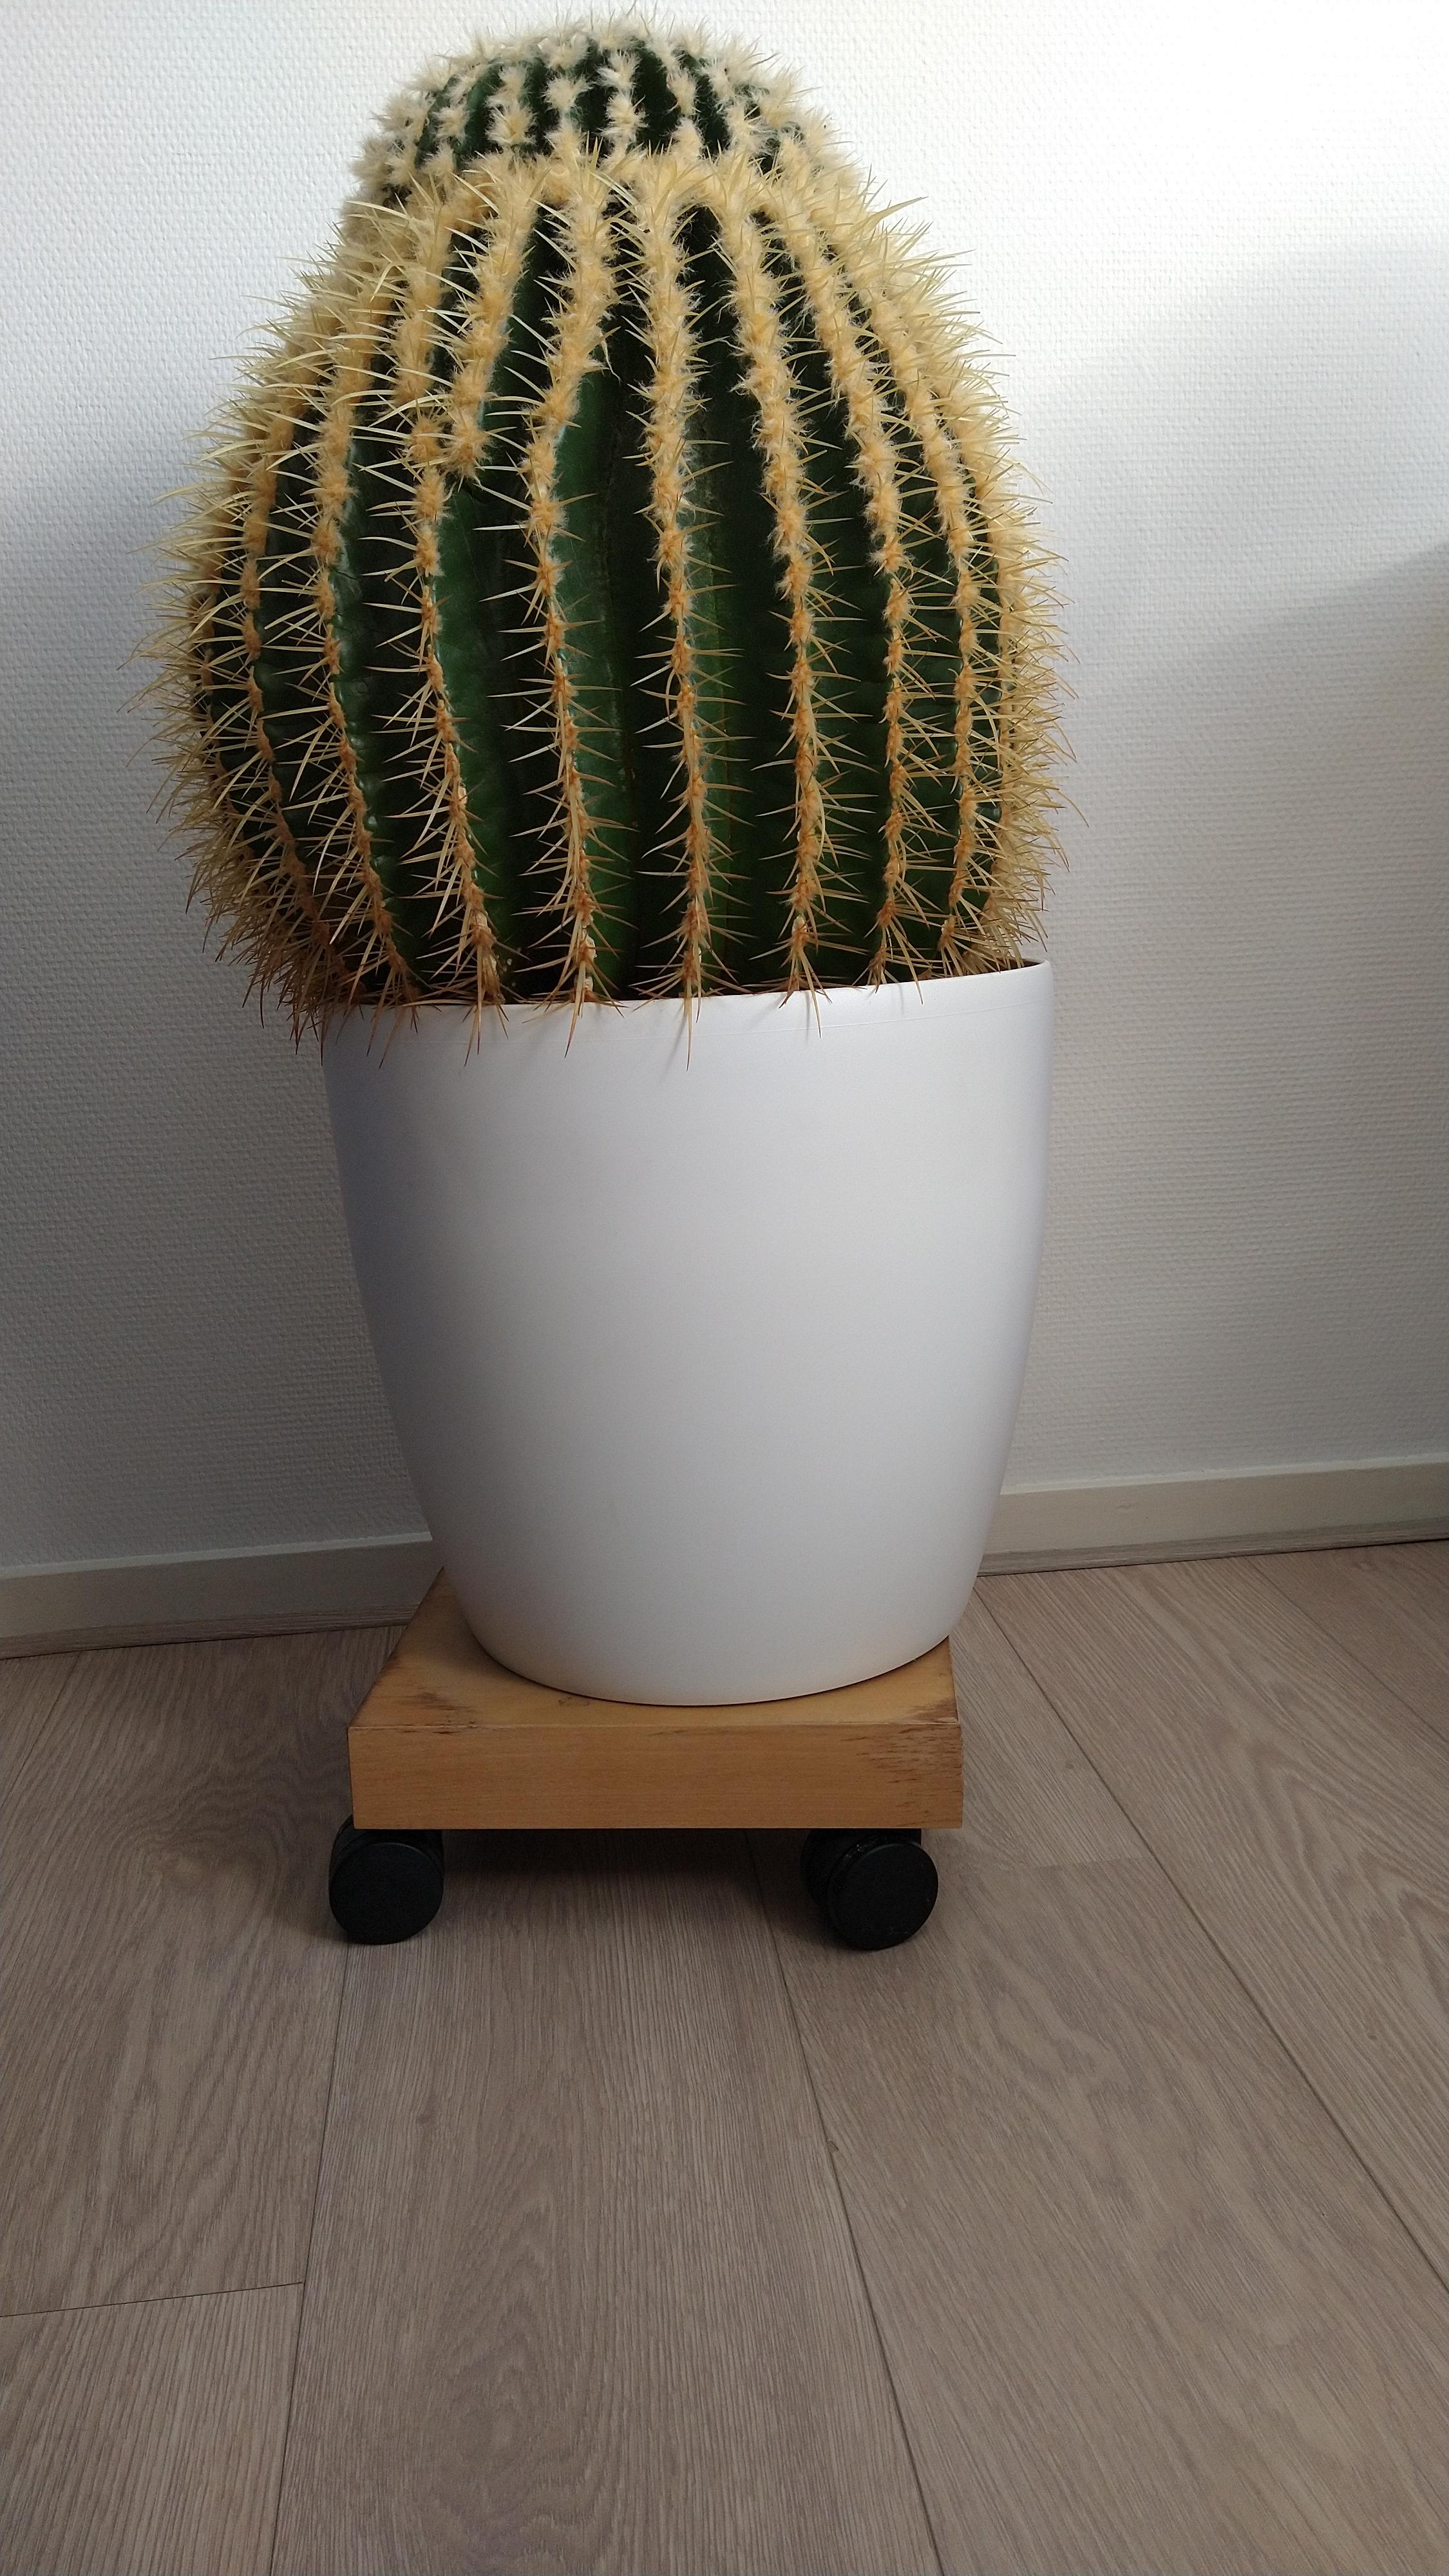 Grote cactus